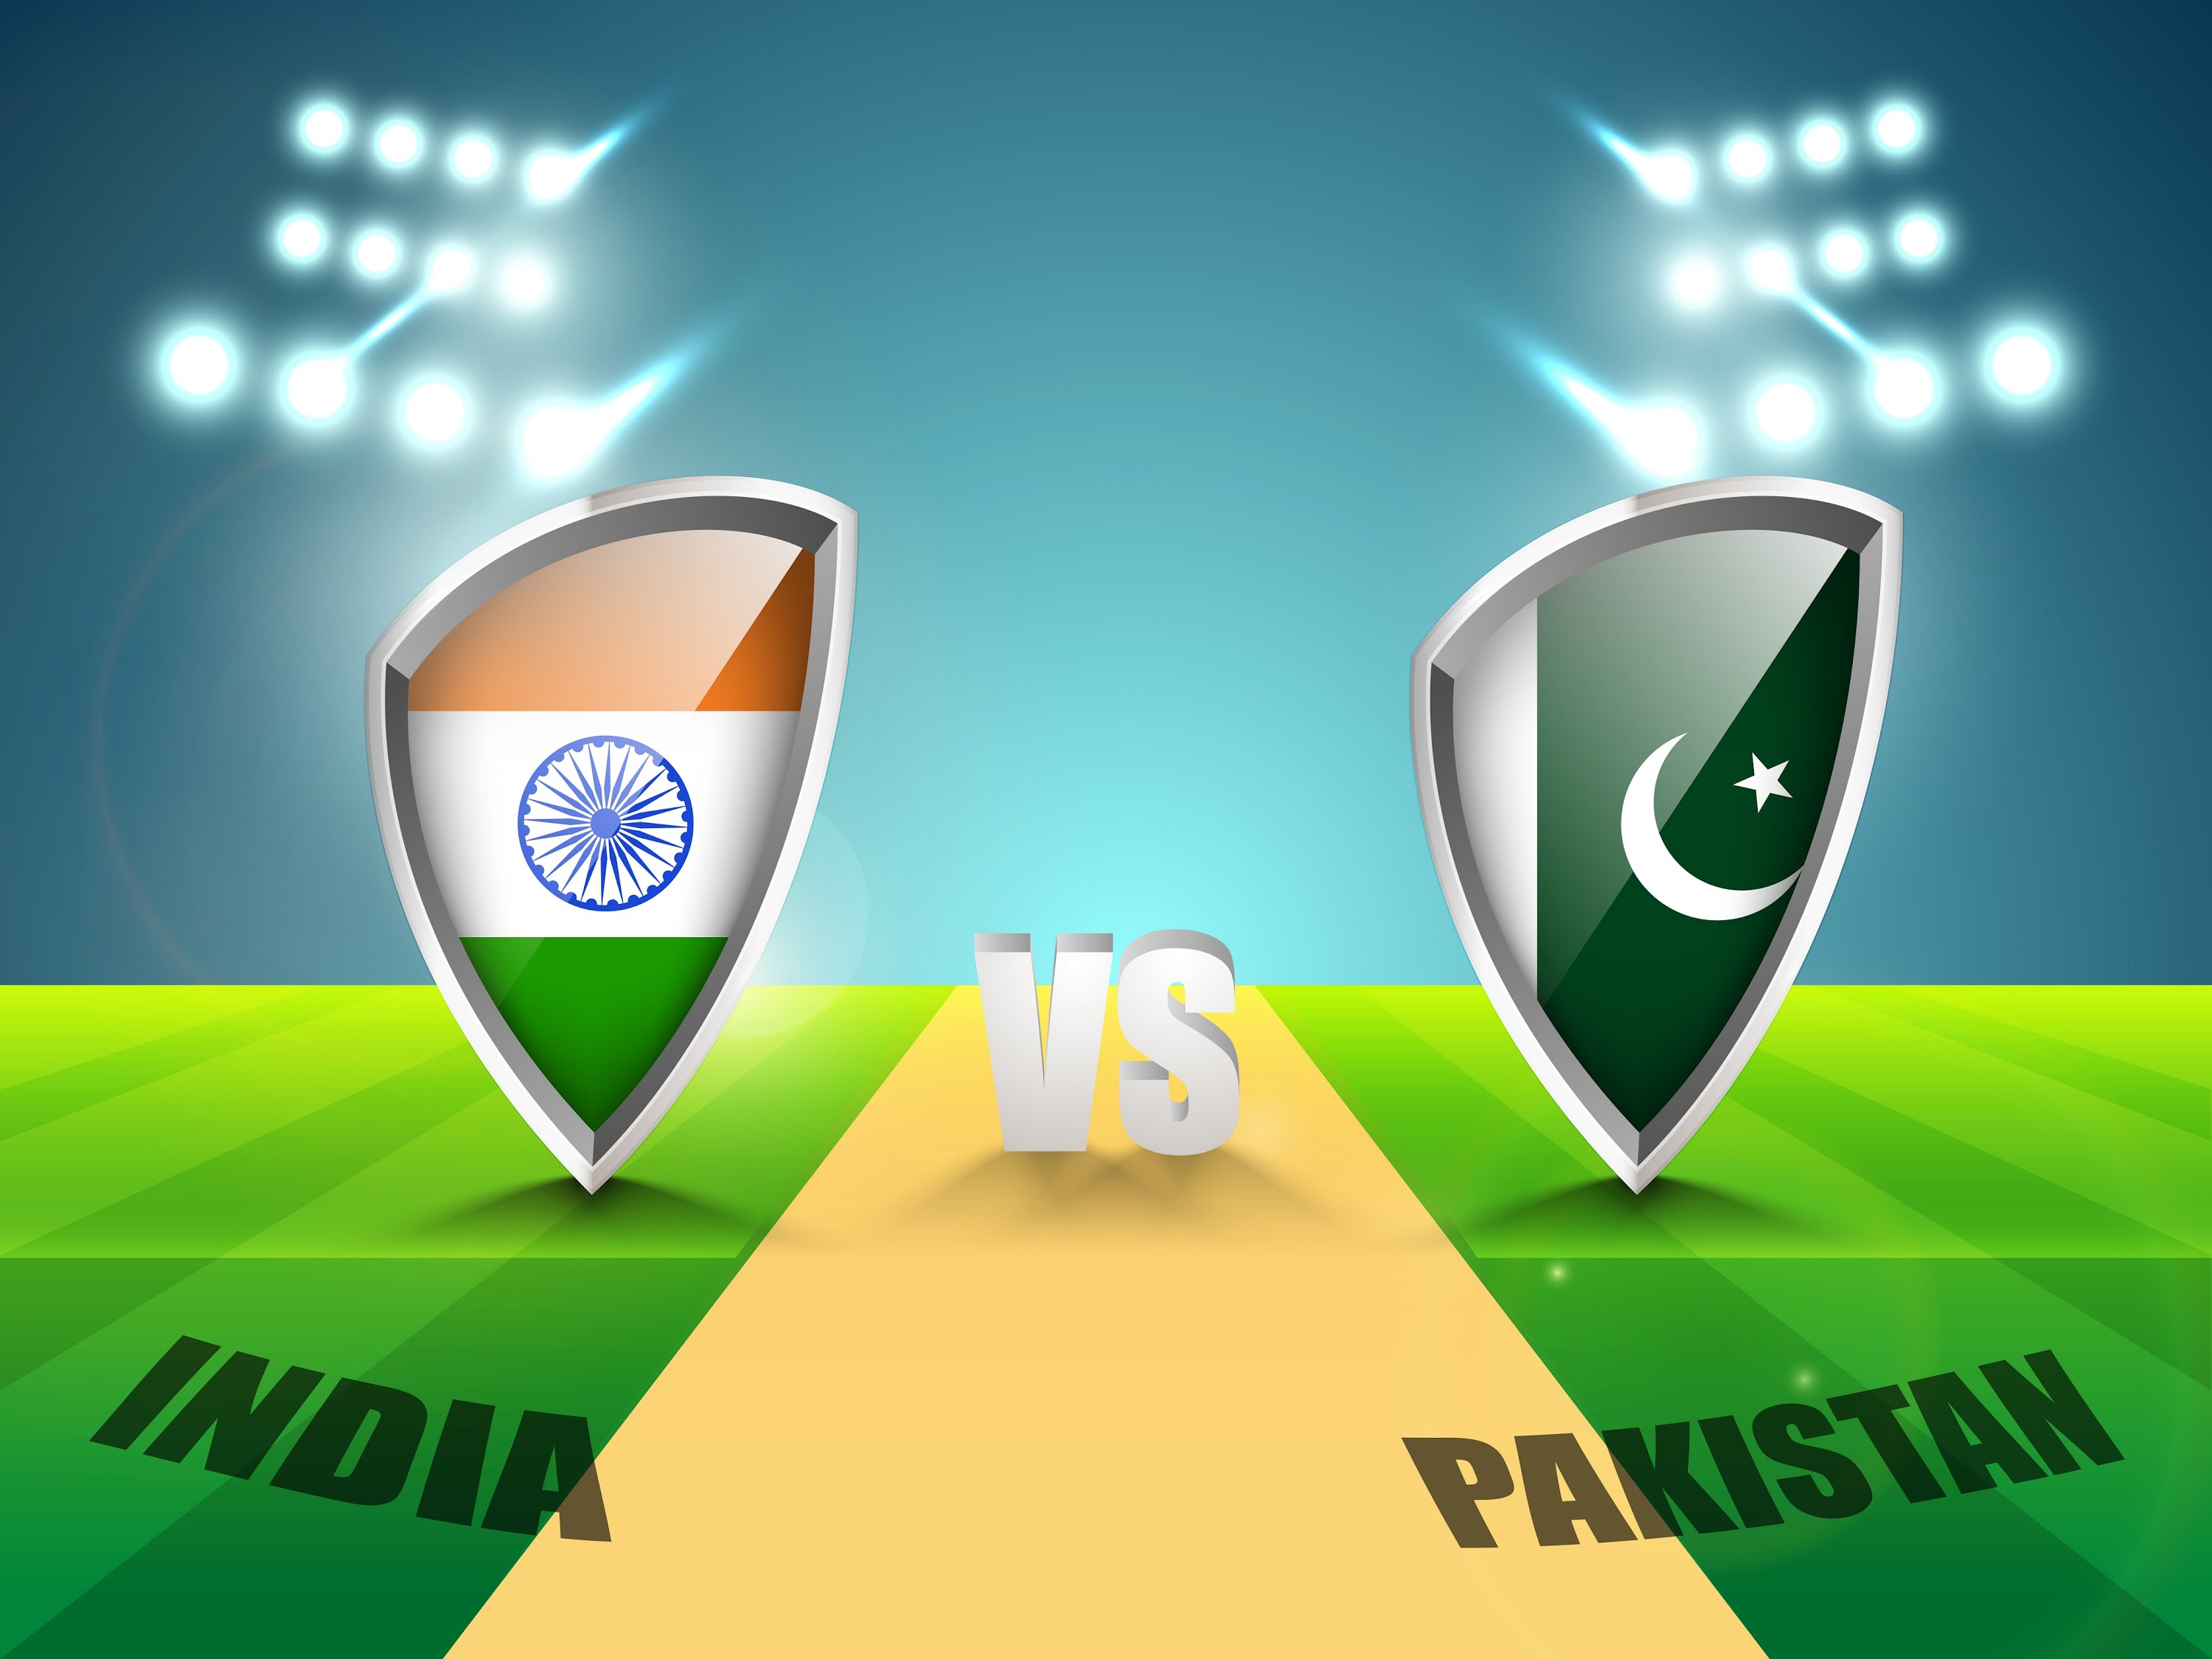 2 जुलाई को एक बार फिर होंगे भारत-पाकिस्तान क्रिकेट के मैदान में आमने-सामने,भारत लेगा चैम्पियन्स ट्राफी का बदला 8